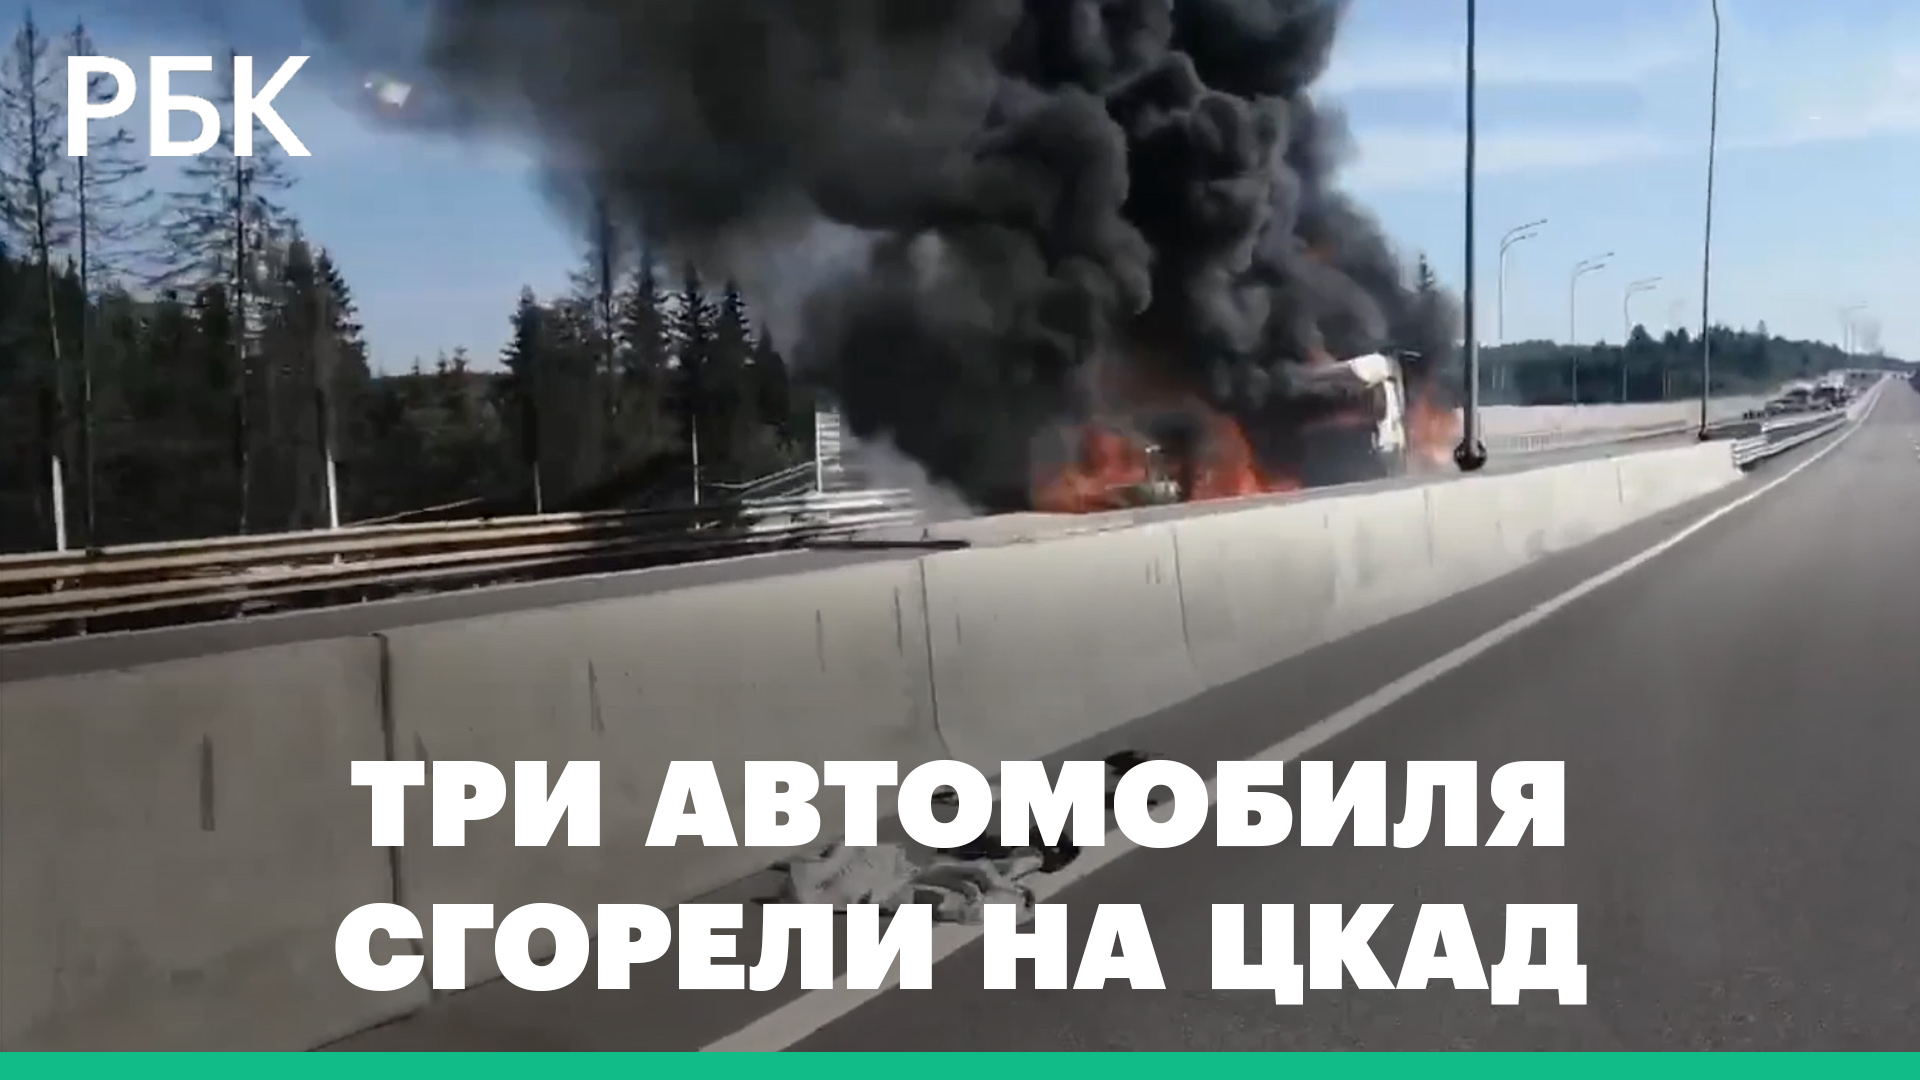 Три автомобиля сгорели на ЦКАД в Подмосковье. Трассу перекрыли: видео очевидцев